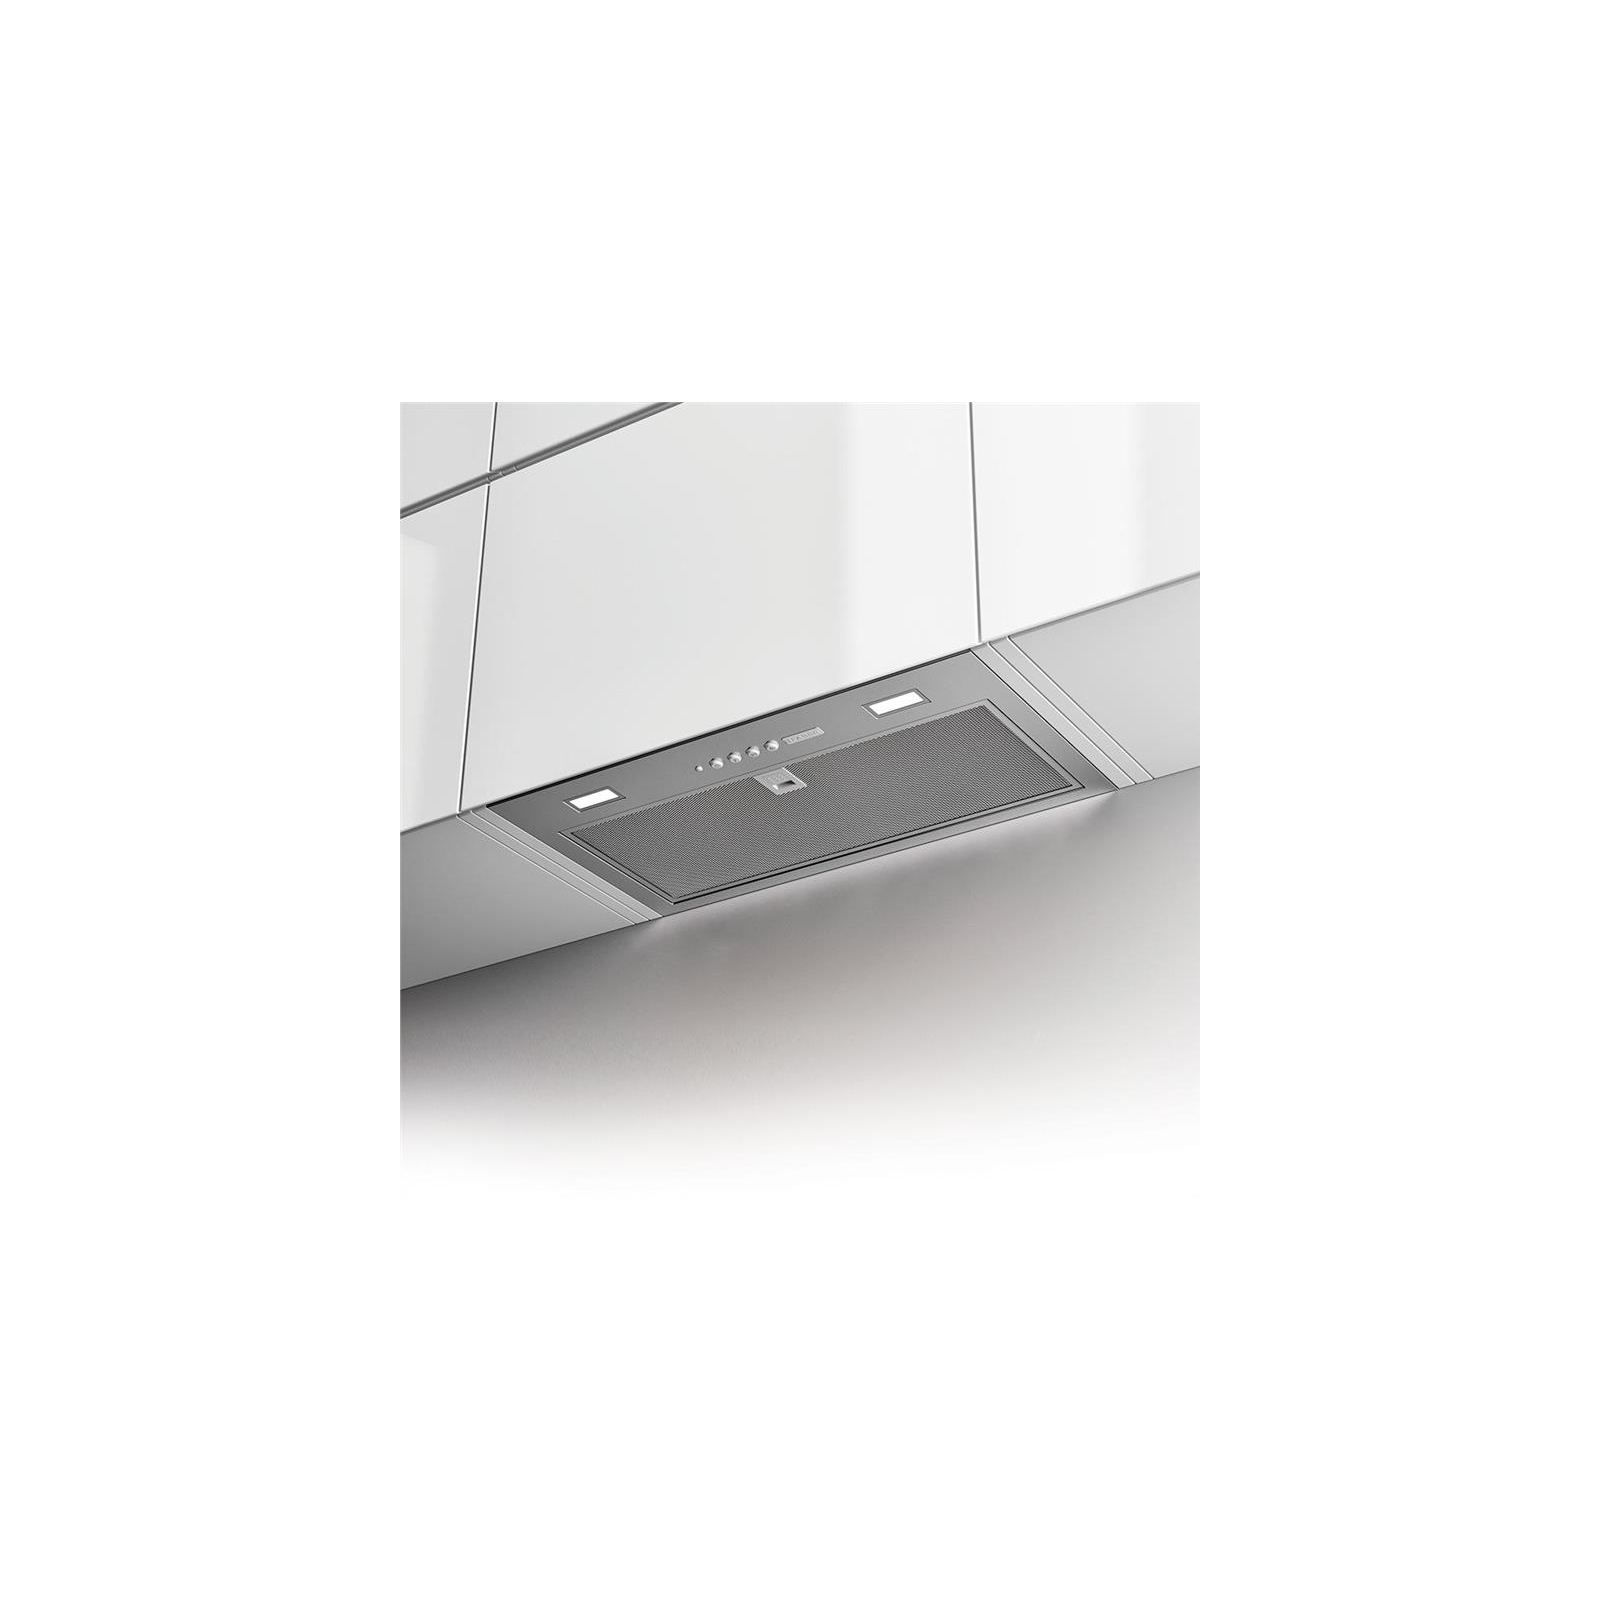 Вытяжка кухонная Faber Inka Lux Smart Ev8 X A52, нерж (305.0604.603) изображение 2